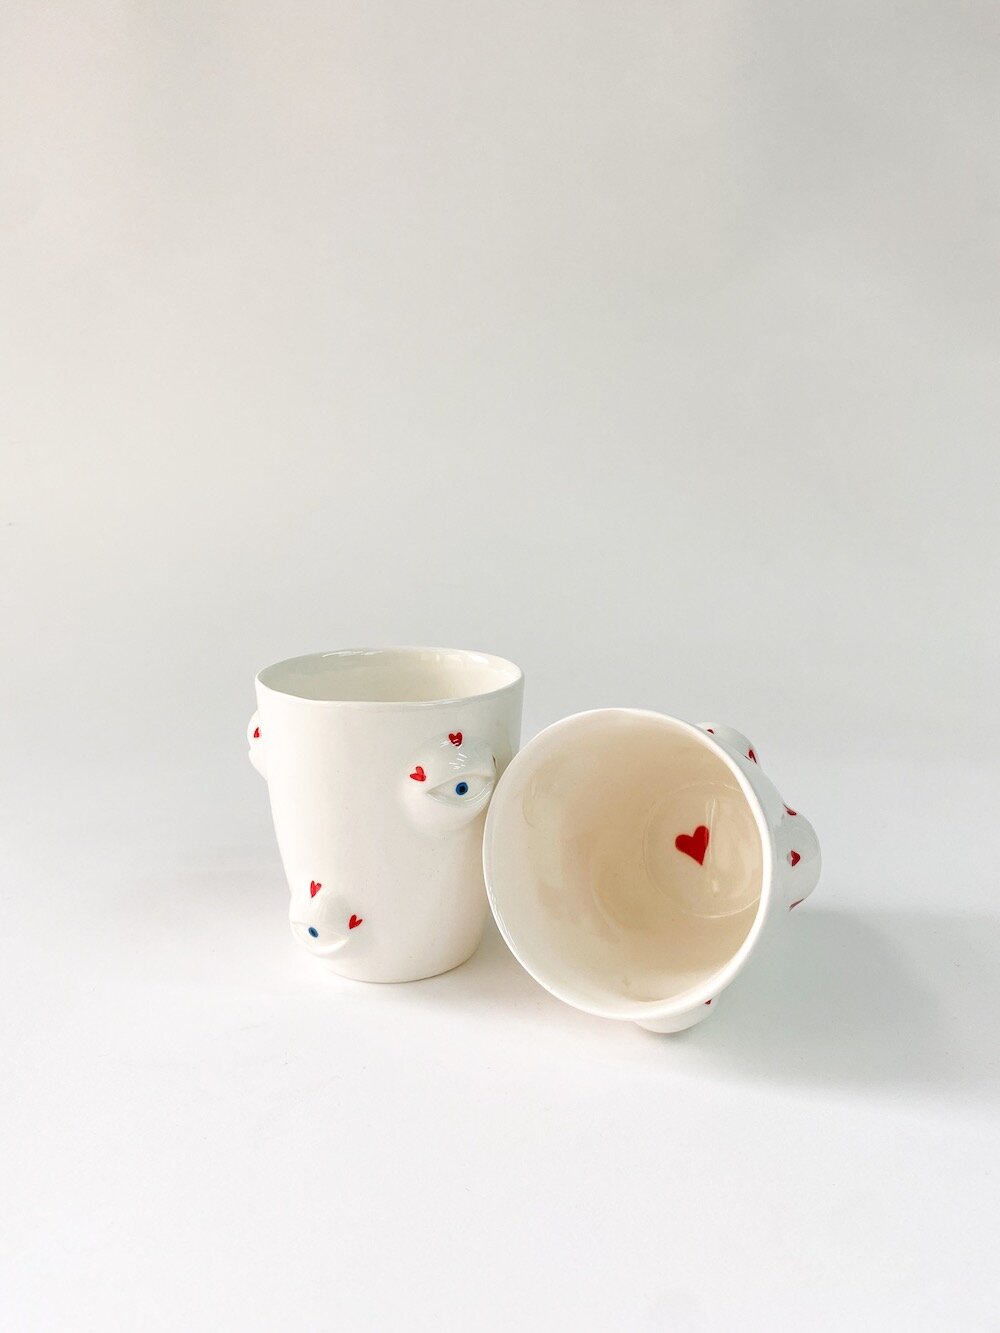 Маленький керамический стакан ручной работы "Глаза" от Кати Мороз